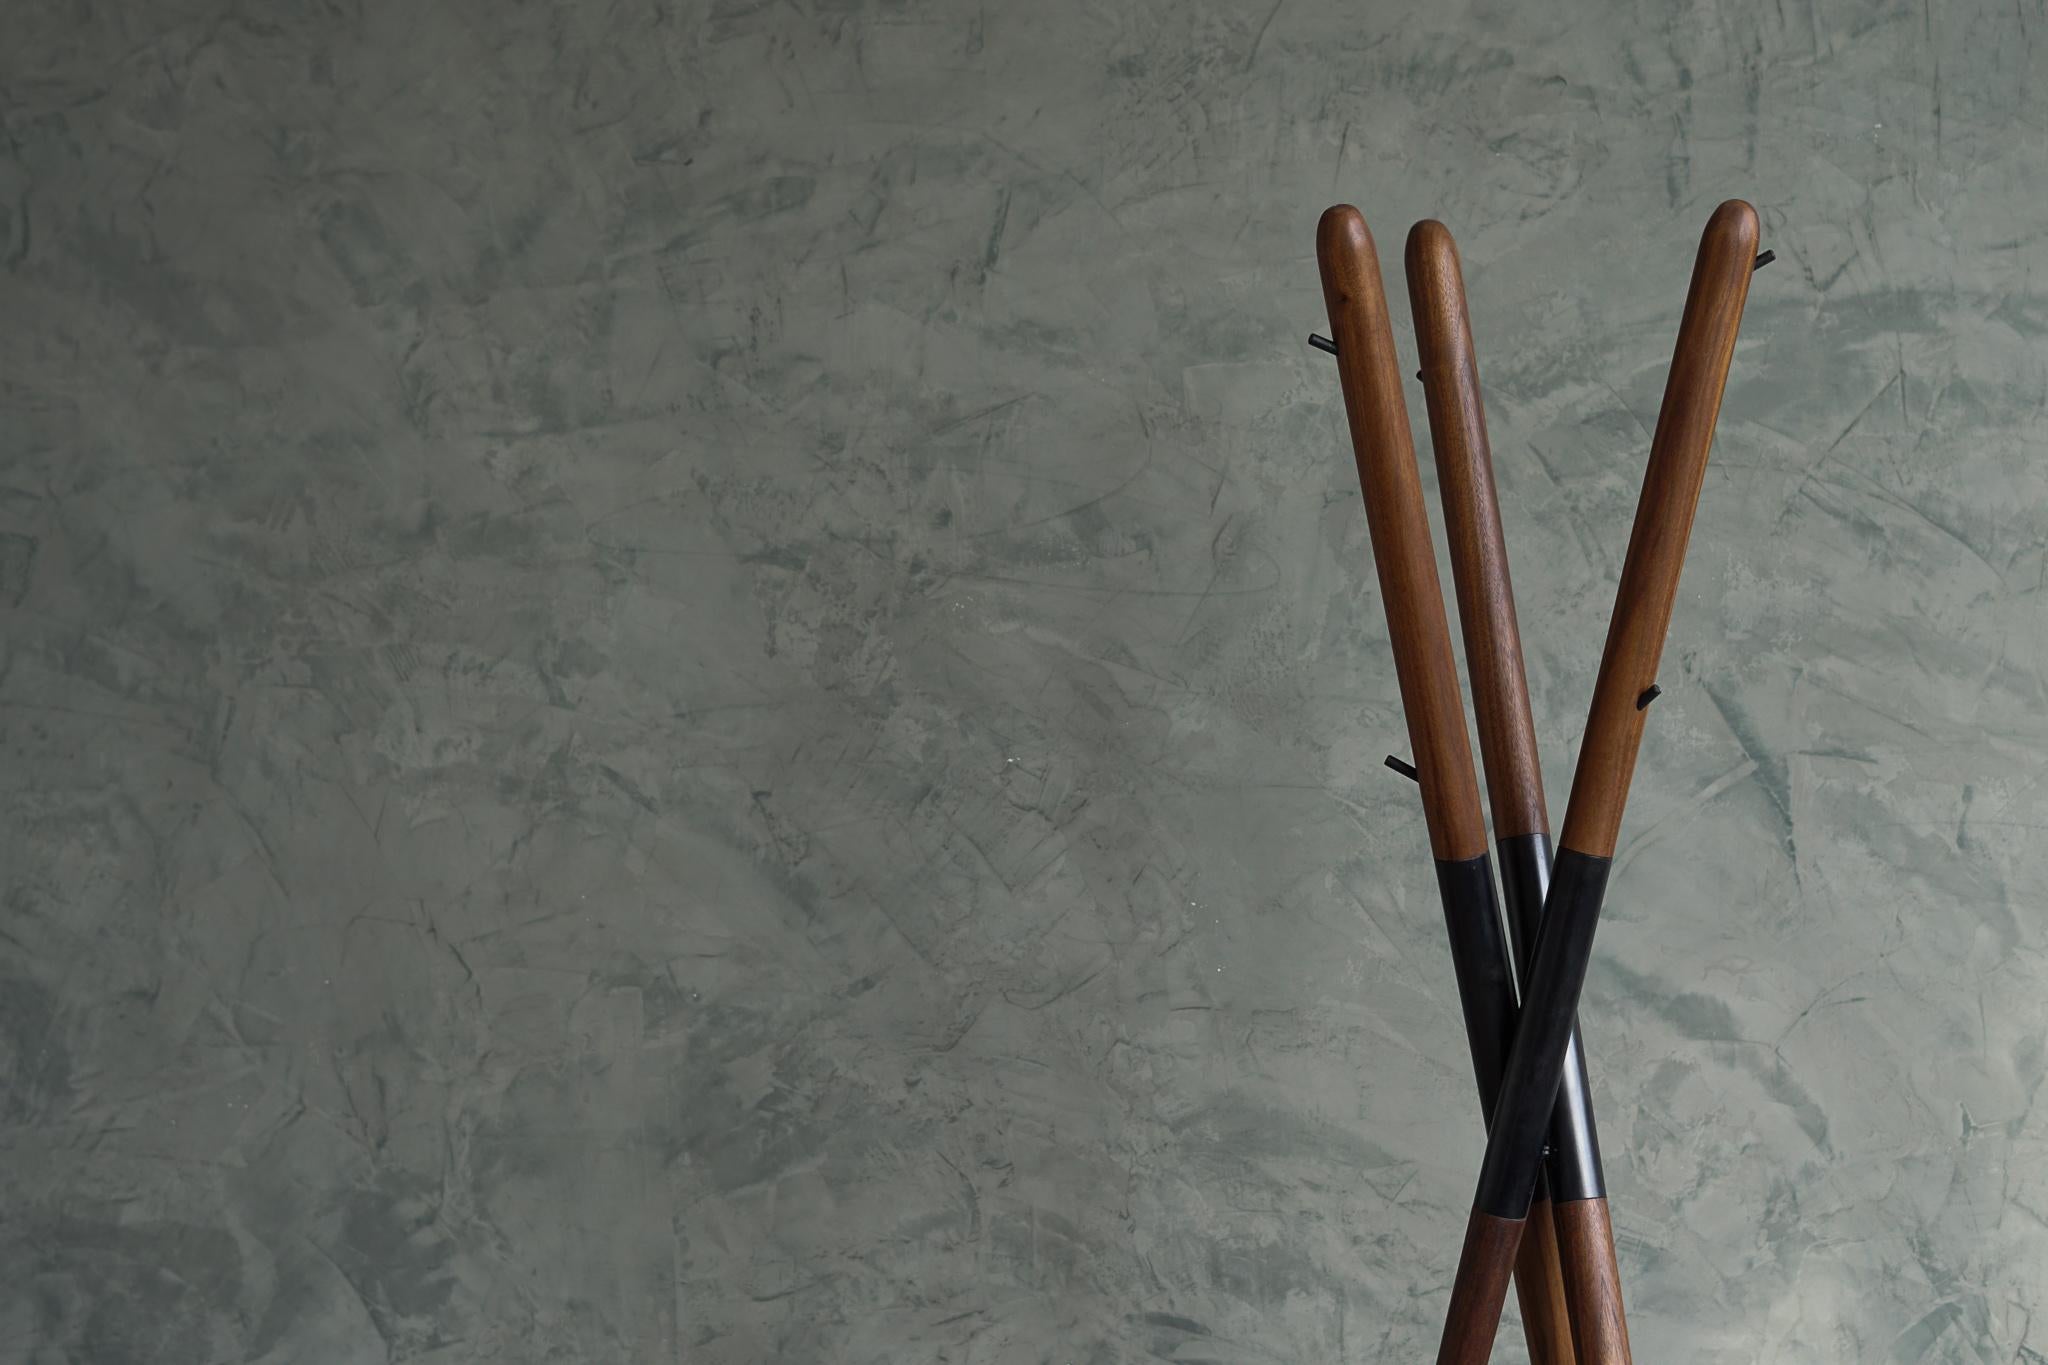 Der Hashi-Garderobenständer ist einem weithin bekannten Werkzeug nachempfunden, den Essstäbchen. Hergestellt aus Nussbaumholz und geschwärztem Stahl. Das Hashi ahmt die Einfachheit und Zeitlosigkeit dieses uralten Werkzeugs nach, das täglich von